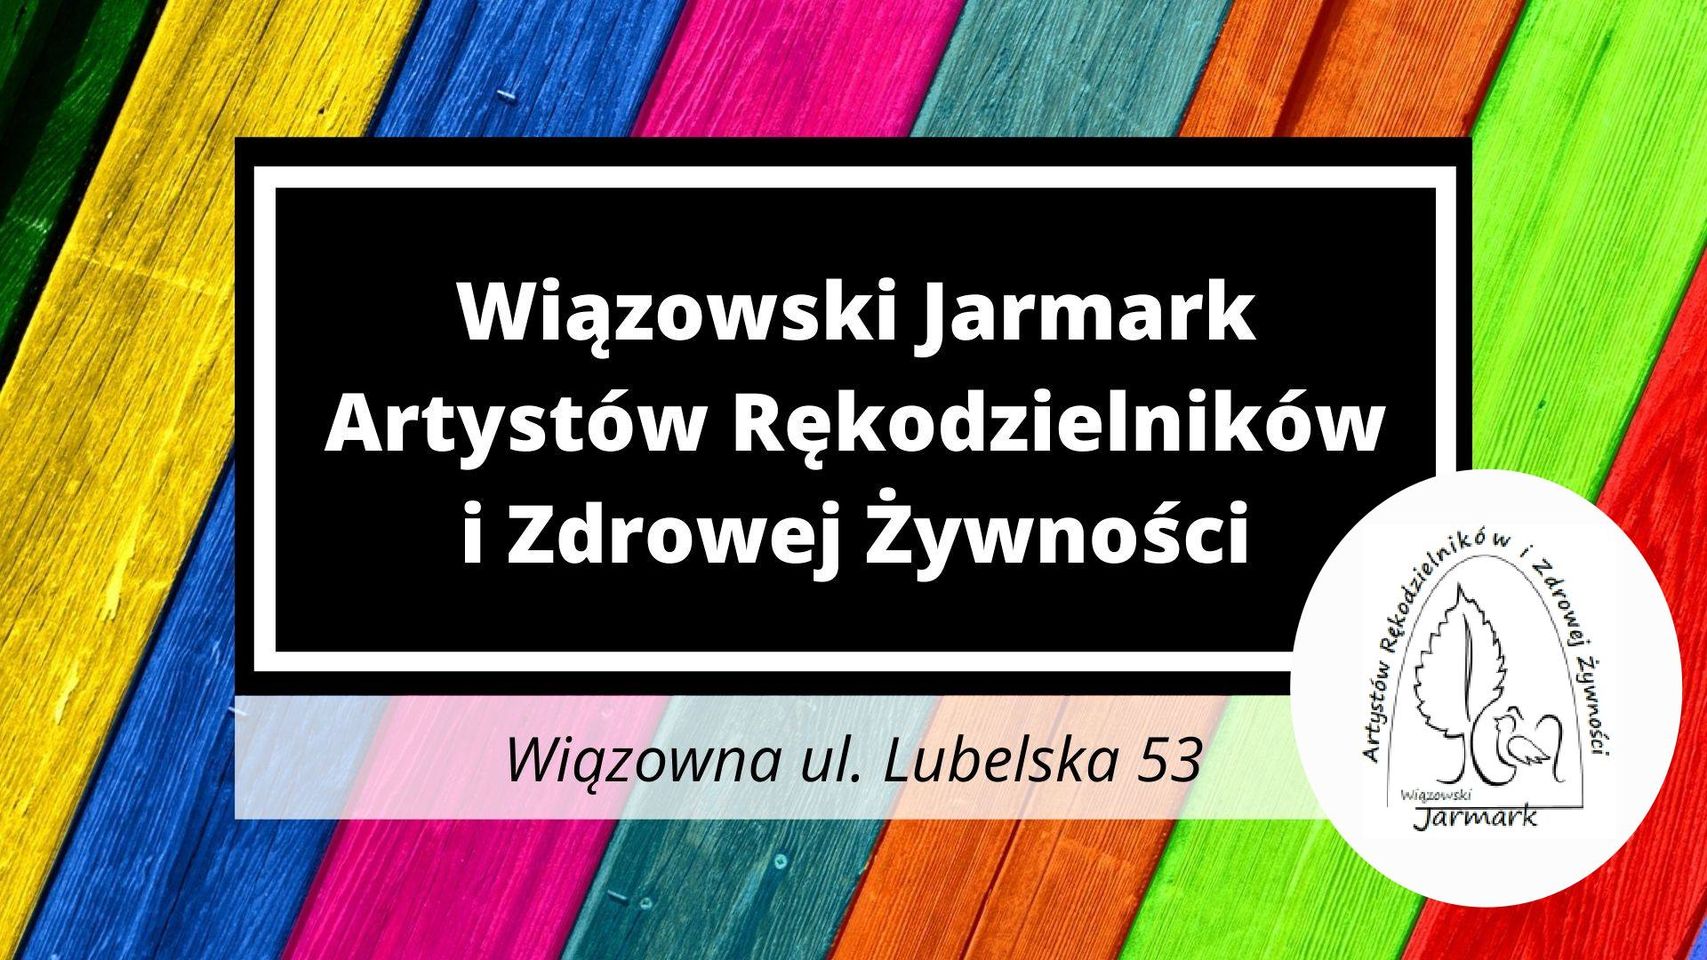 Wiązowski Jarmark Artystów, Rękodzielników i Zdrowej Żywności